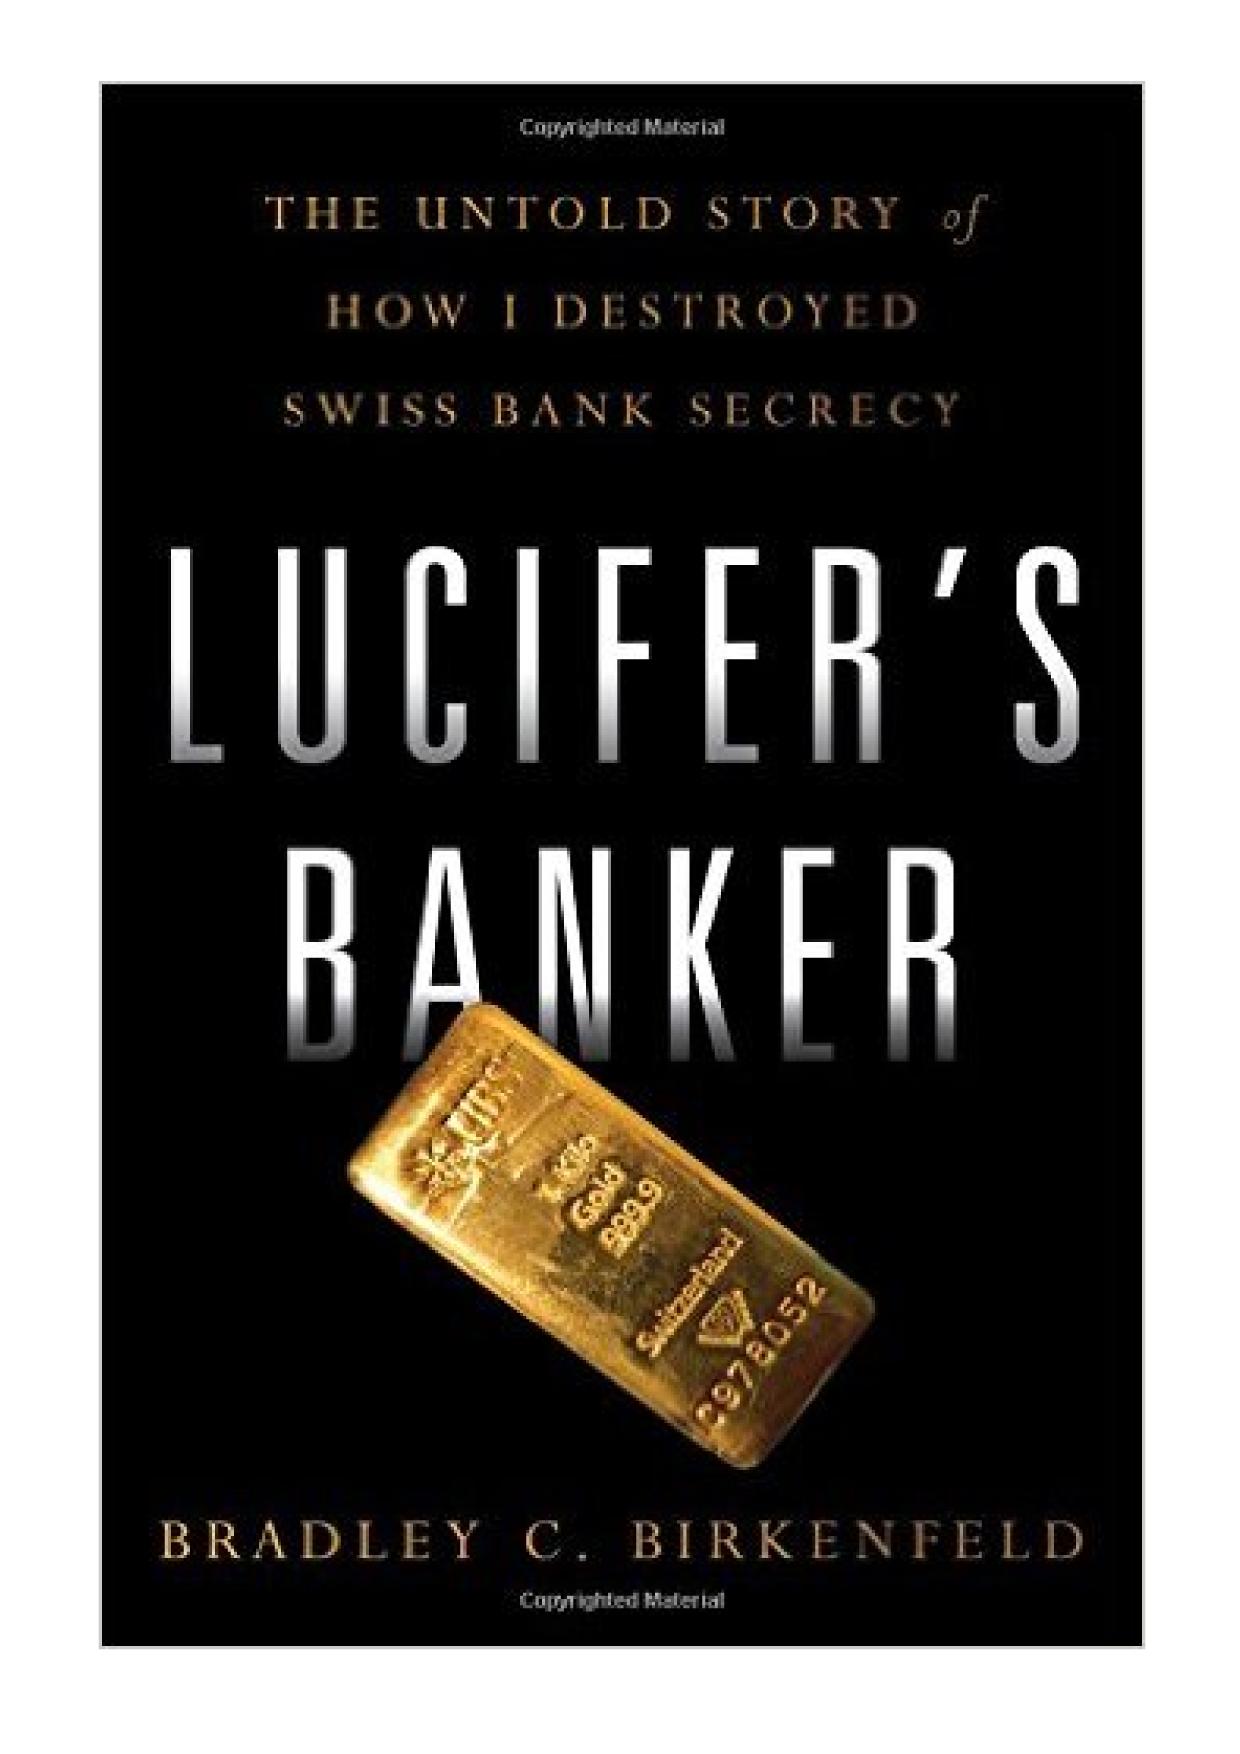 Lucifer's Banker